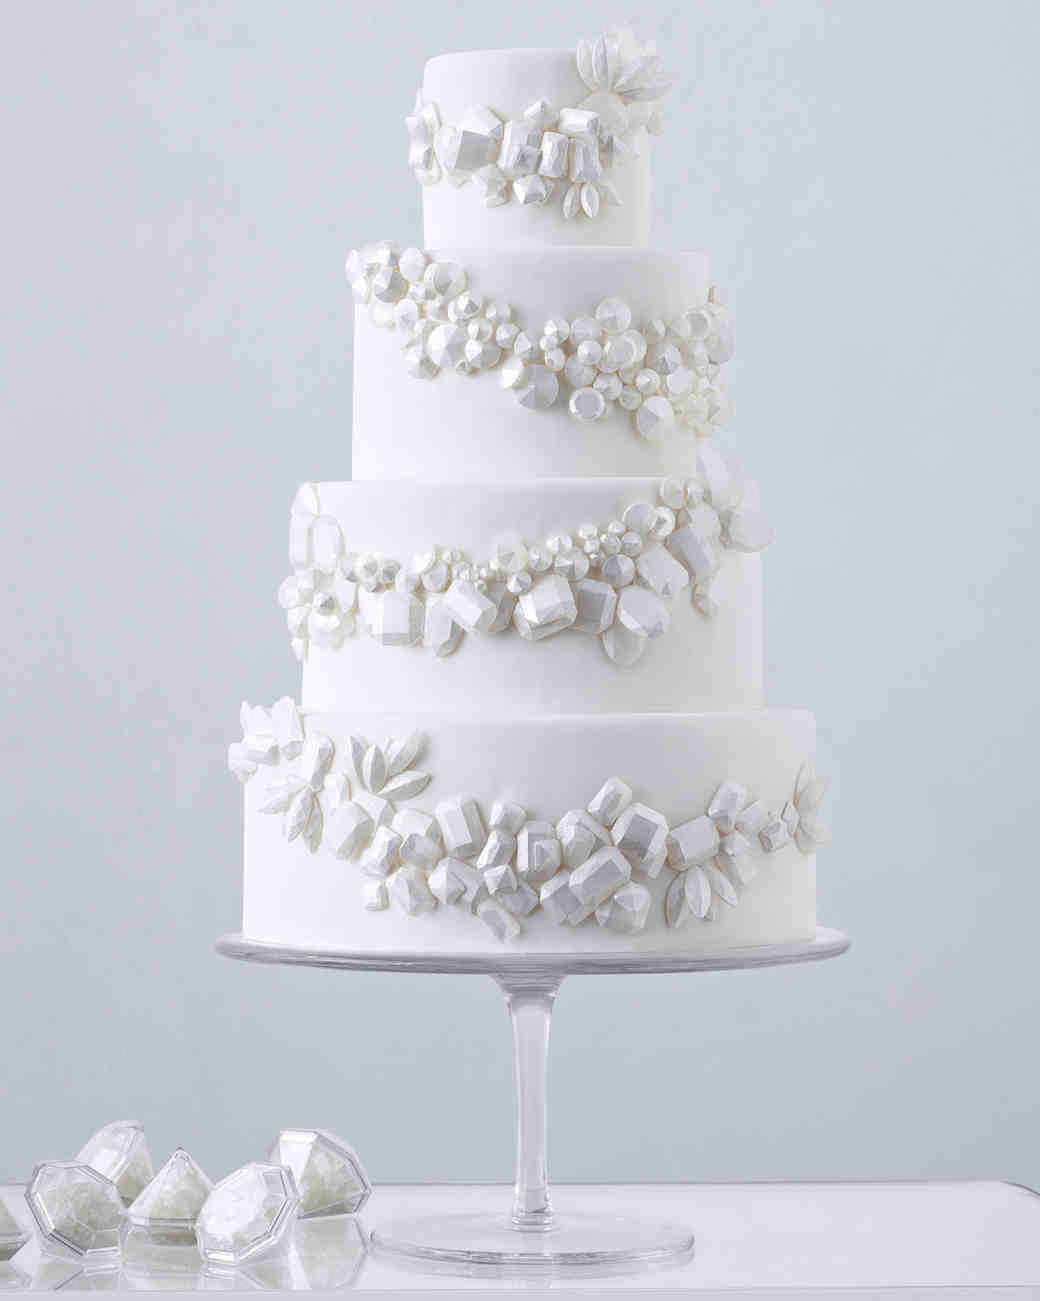 White Wedding Cakes
 104 White Wedding Cakes That Make the Case for Going